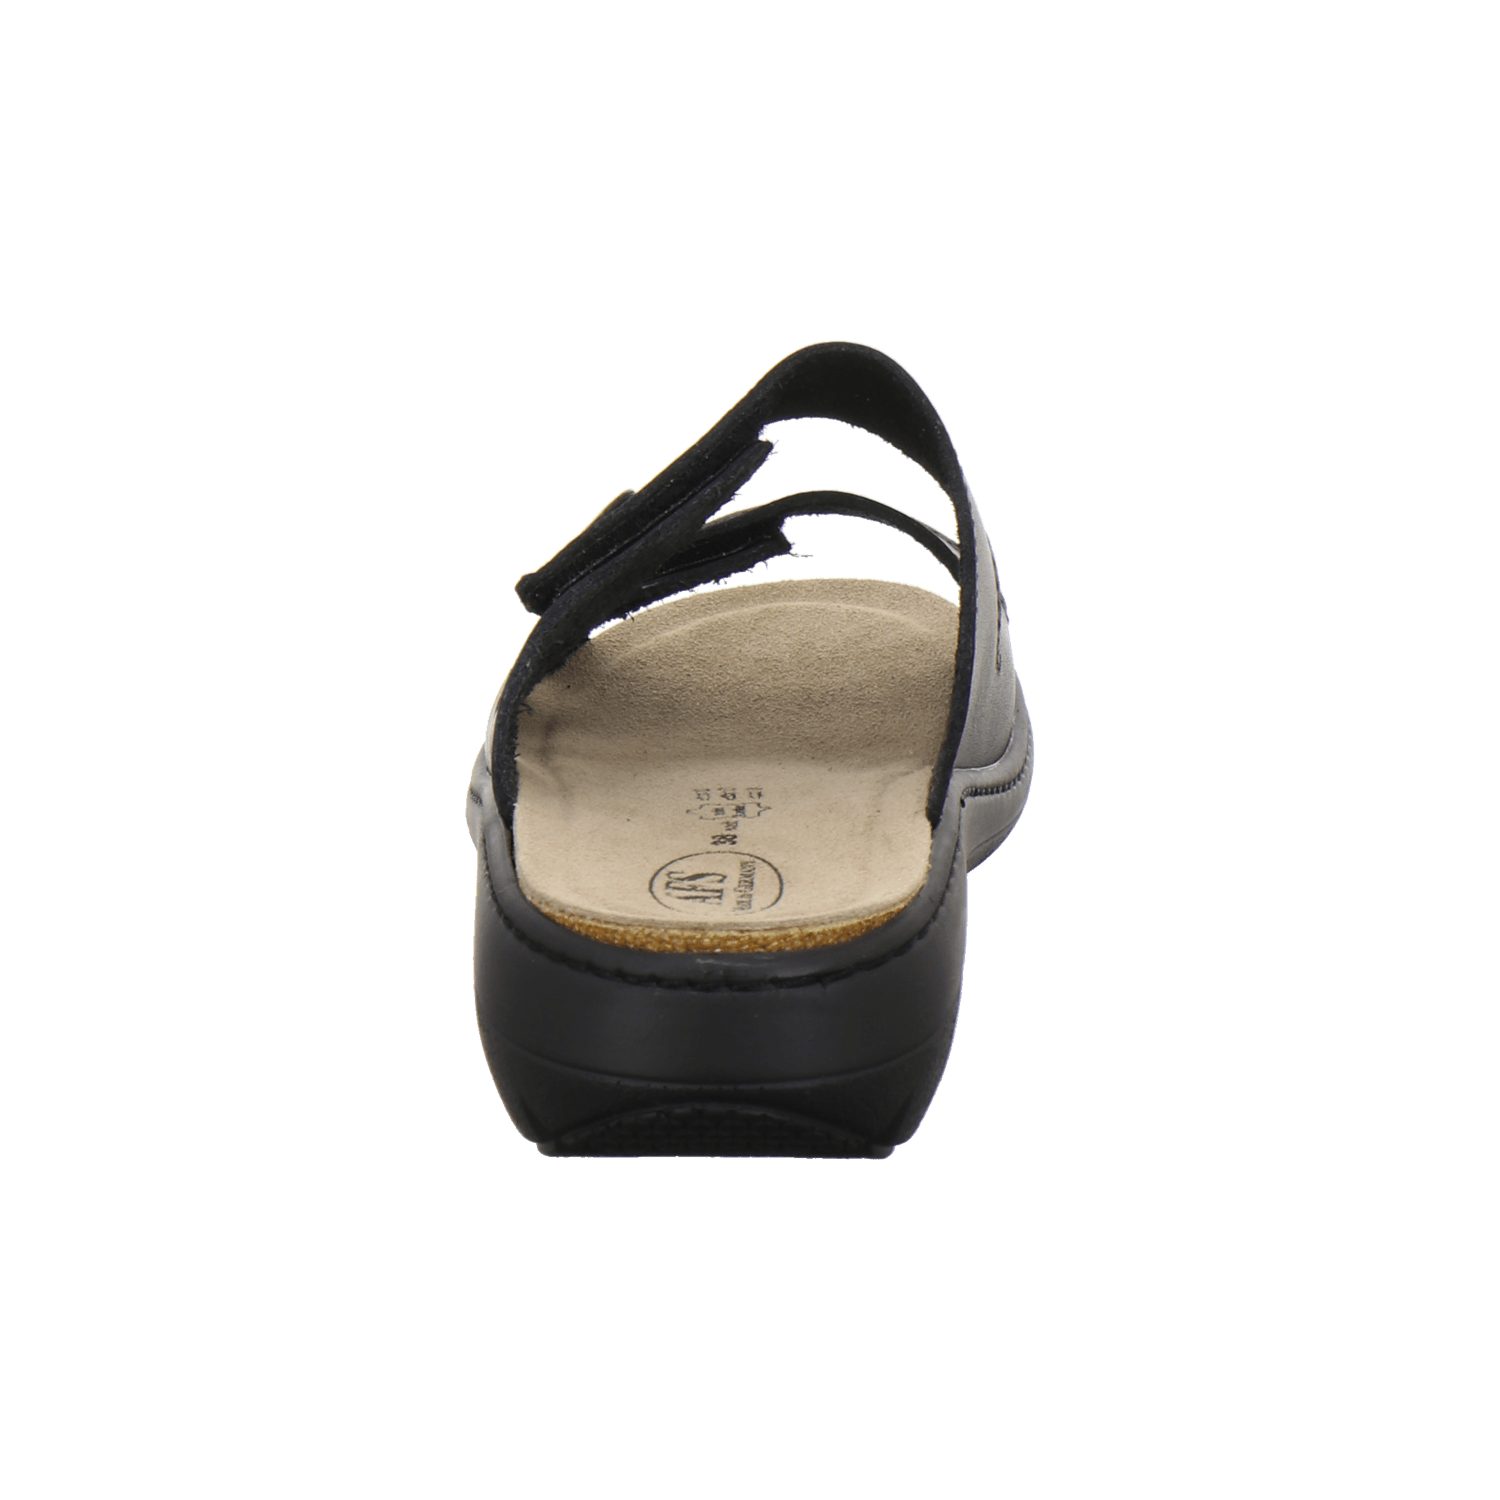 für Pantolette Wechselfußbett, schwarz Damen aus 2808 mit Made Glattleder in AFS-Schuhe Leder Germany